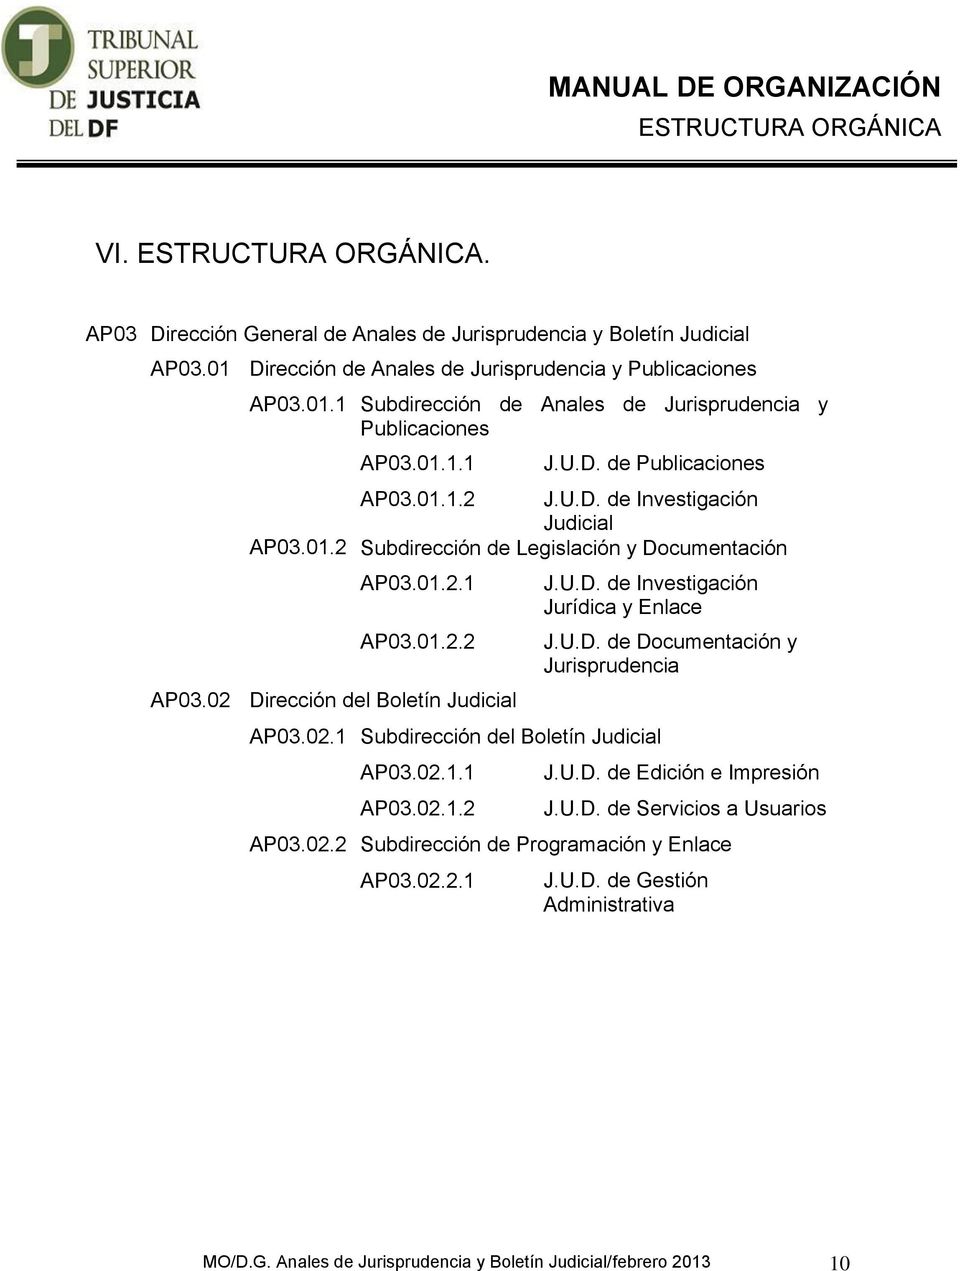 02.1 Subdirección del Boletín Judicial AP03.02.1.1 AP03.02.1.2 J.U.D. de Documentación y Jurisprudencia J.U.D. de Edición e Impresión J.U.D. de Servicios a Usuarios AP03.02.2 Subdirección de Programación y Enlace AP03.